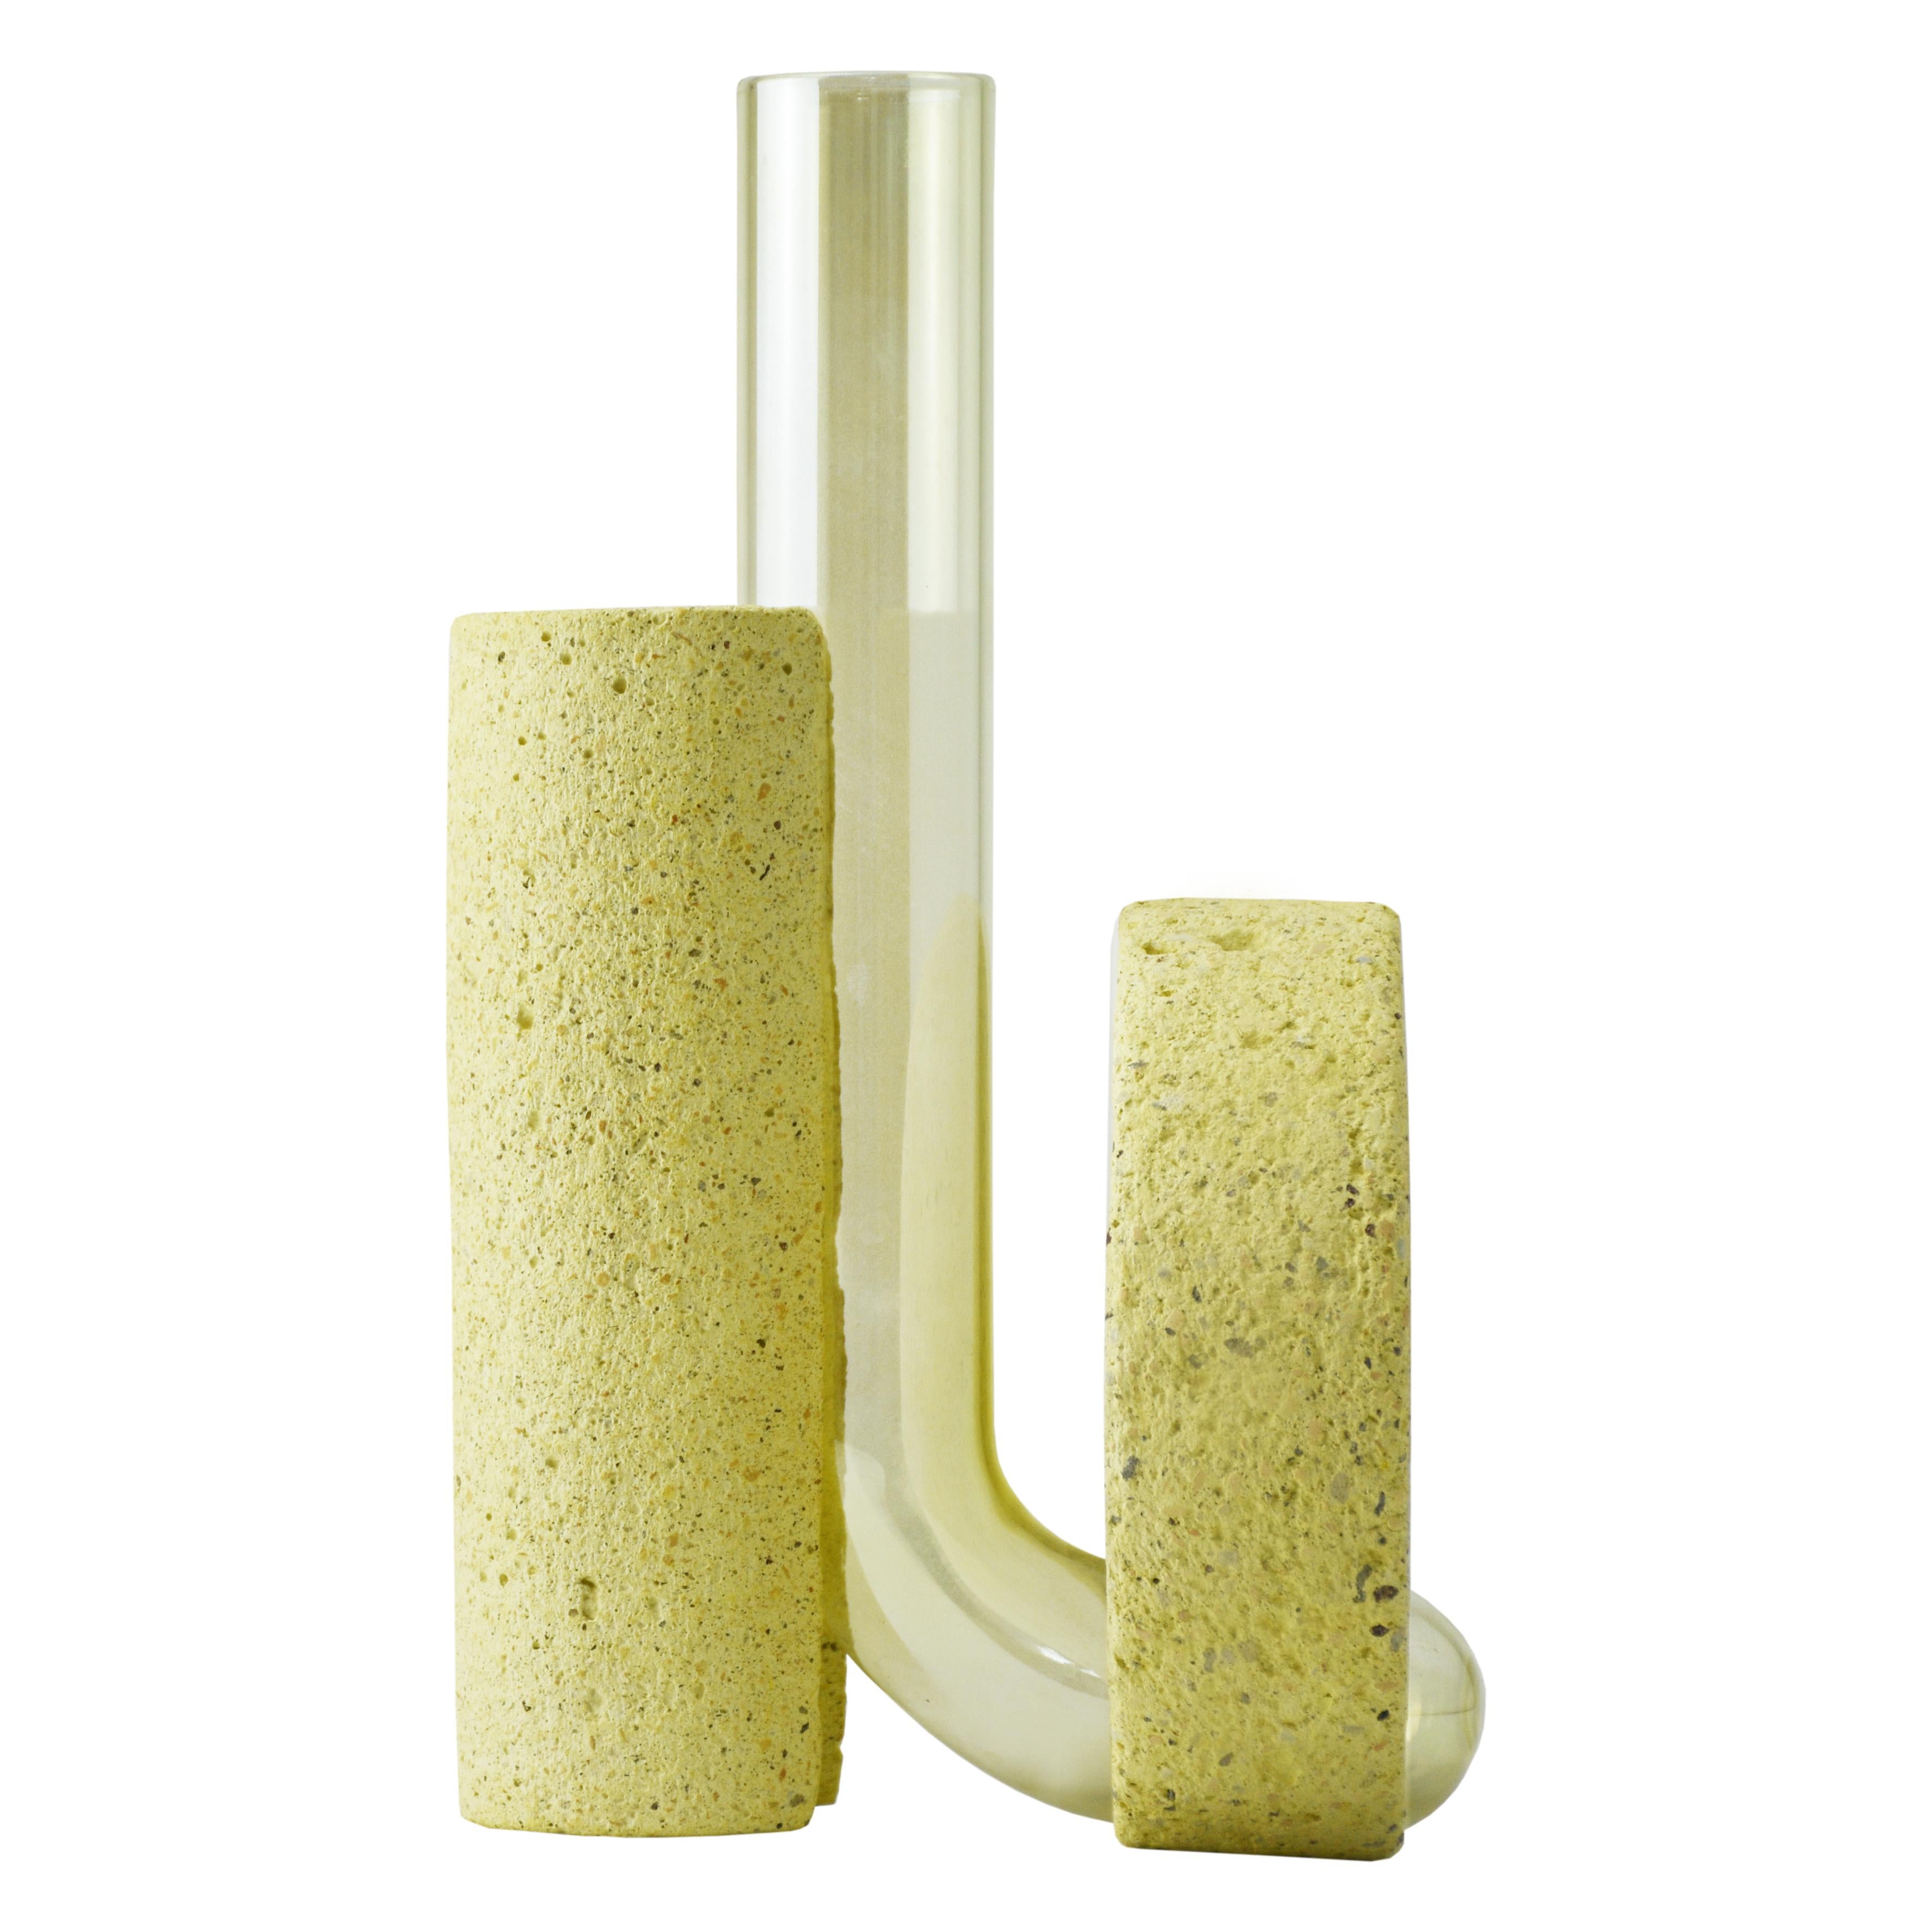 Vase en pierre jaune et en verre, design contemporain.
La collection de vases Cochleae s'inspire du cycle de vie des escargots et capture leur croissance lorsque le corps de l'invertébré (représenté par le verre incurvé) se développe vers le haut à